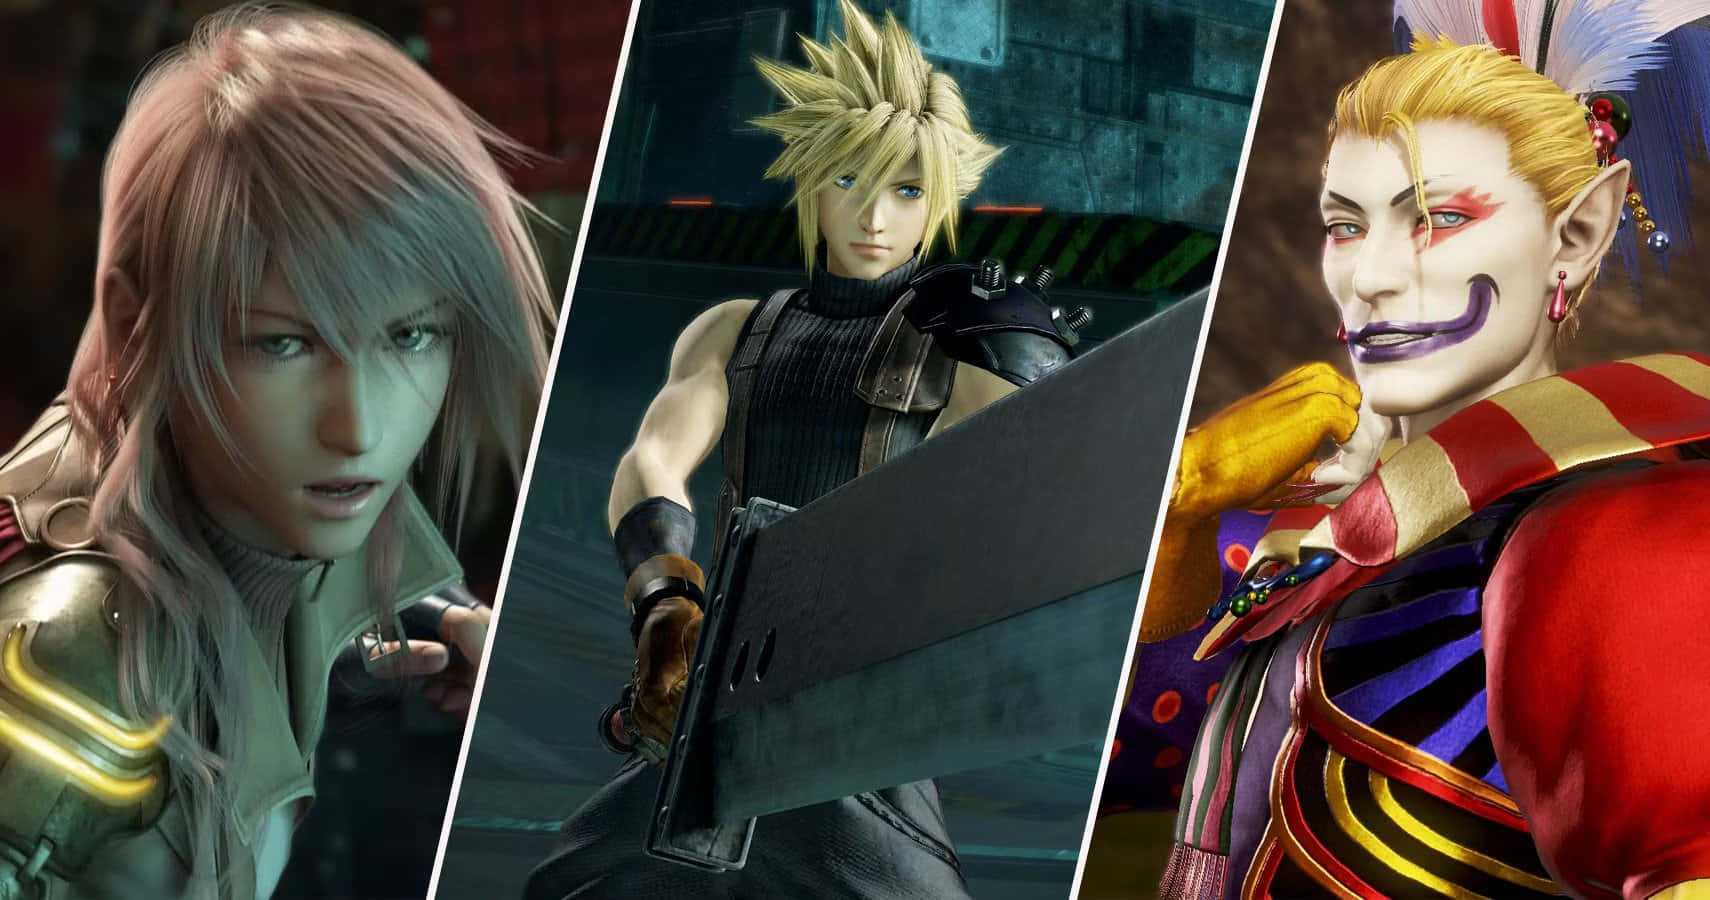 Títuloapasionantes Personajes De Final Fantasy Listos Para La Acción. Fondo de pantalla